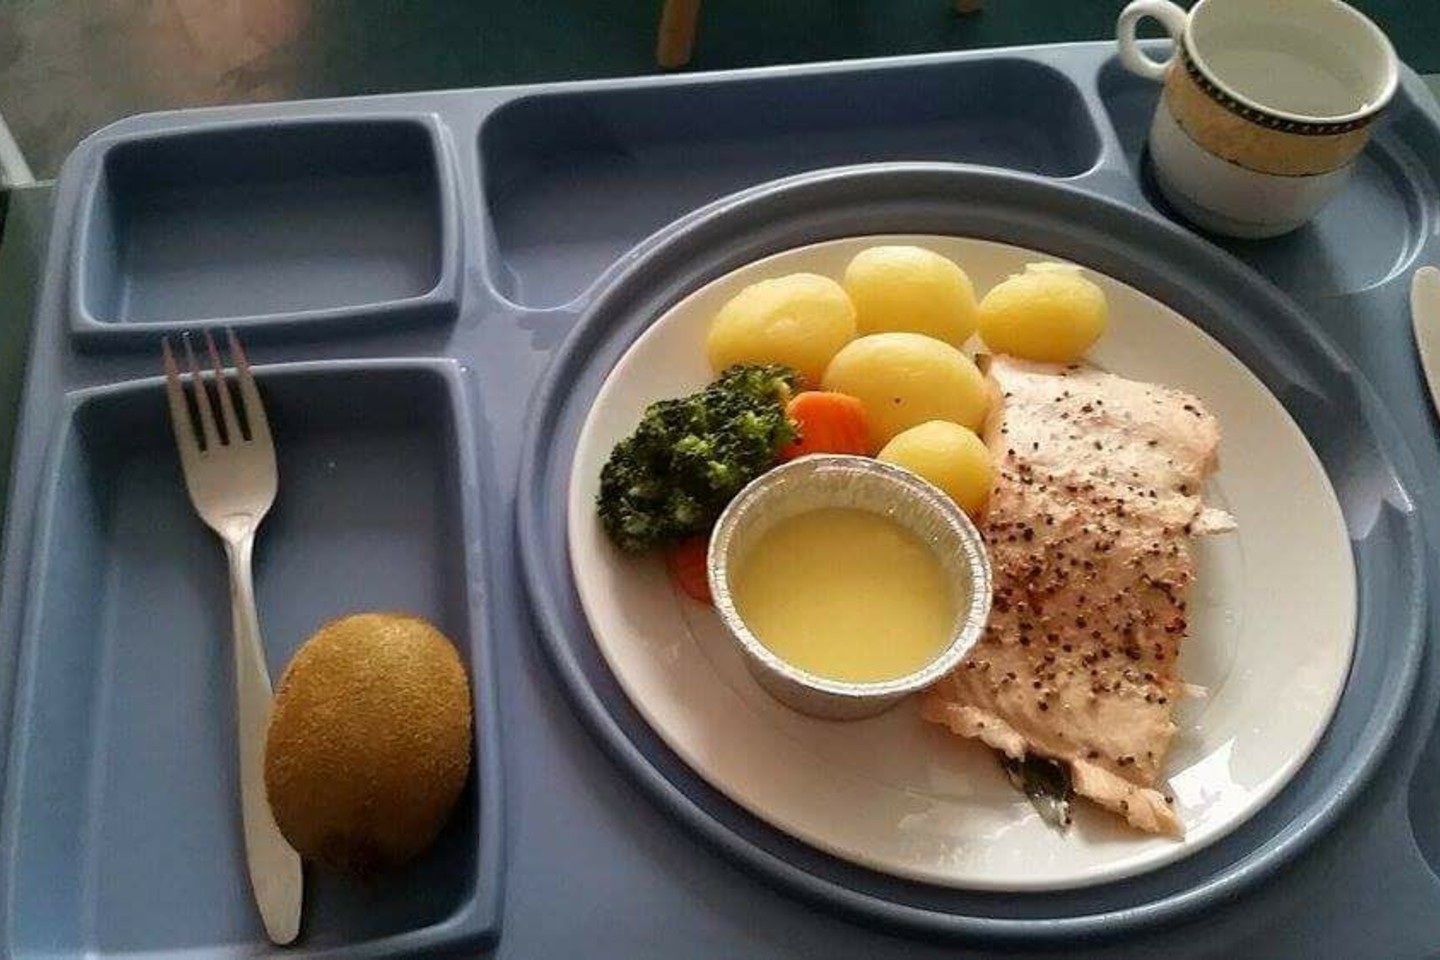 Nuotraukoje matyti Norvegijos ligoninėje siūlomas maistas.<br> Skaitytojos Editos nuotr.